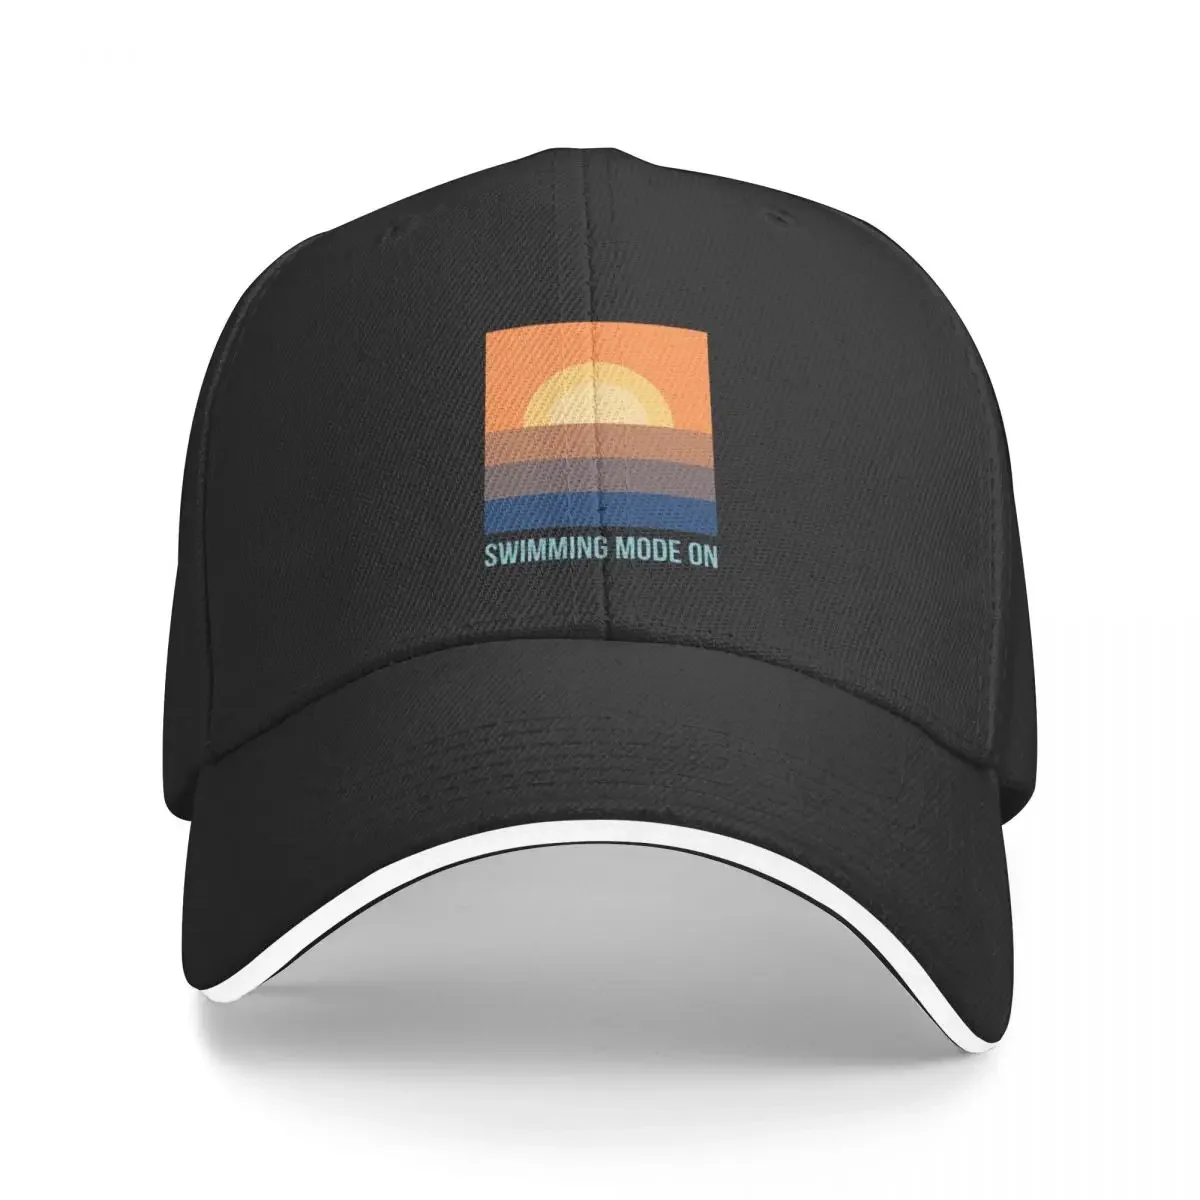 

Режим плавания «Вкл». Бейсболка, Западная шляпа, Солнцезащитная шляпа для детей, модная пляжная рыболовная Кепка, шляпы для женщин и мужчин